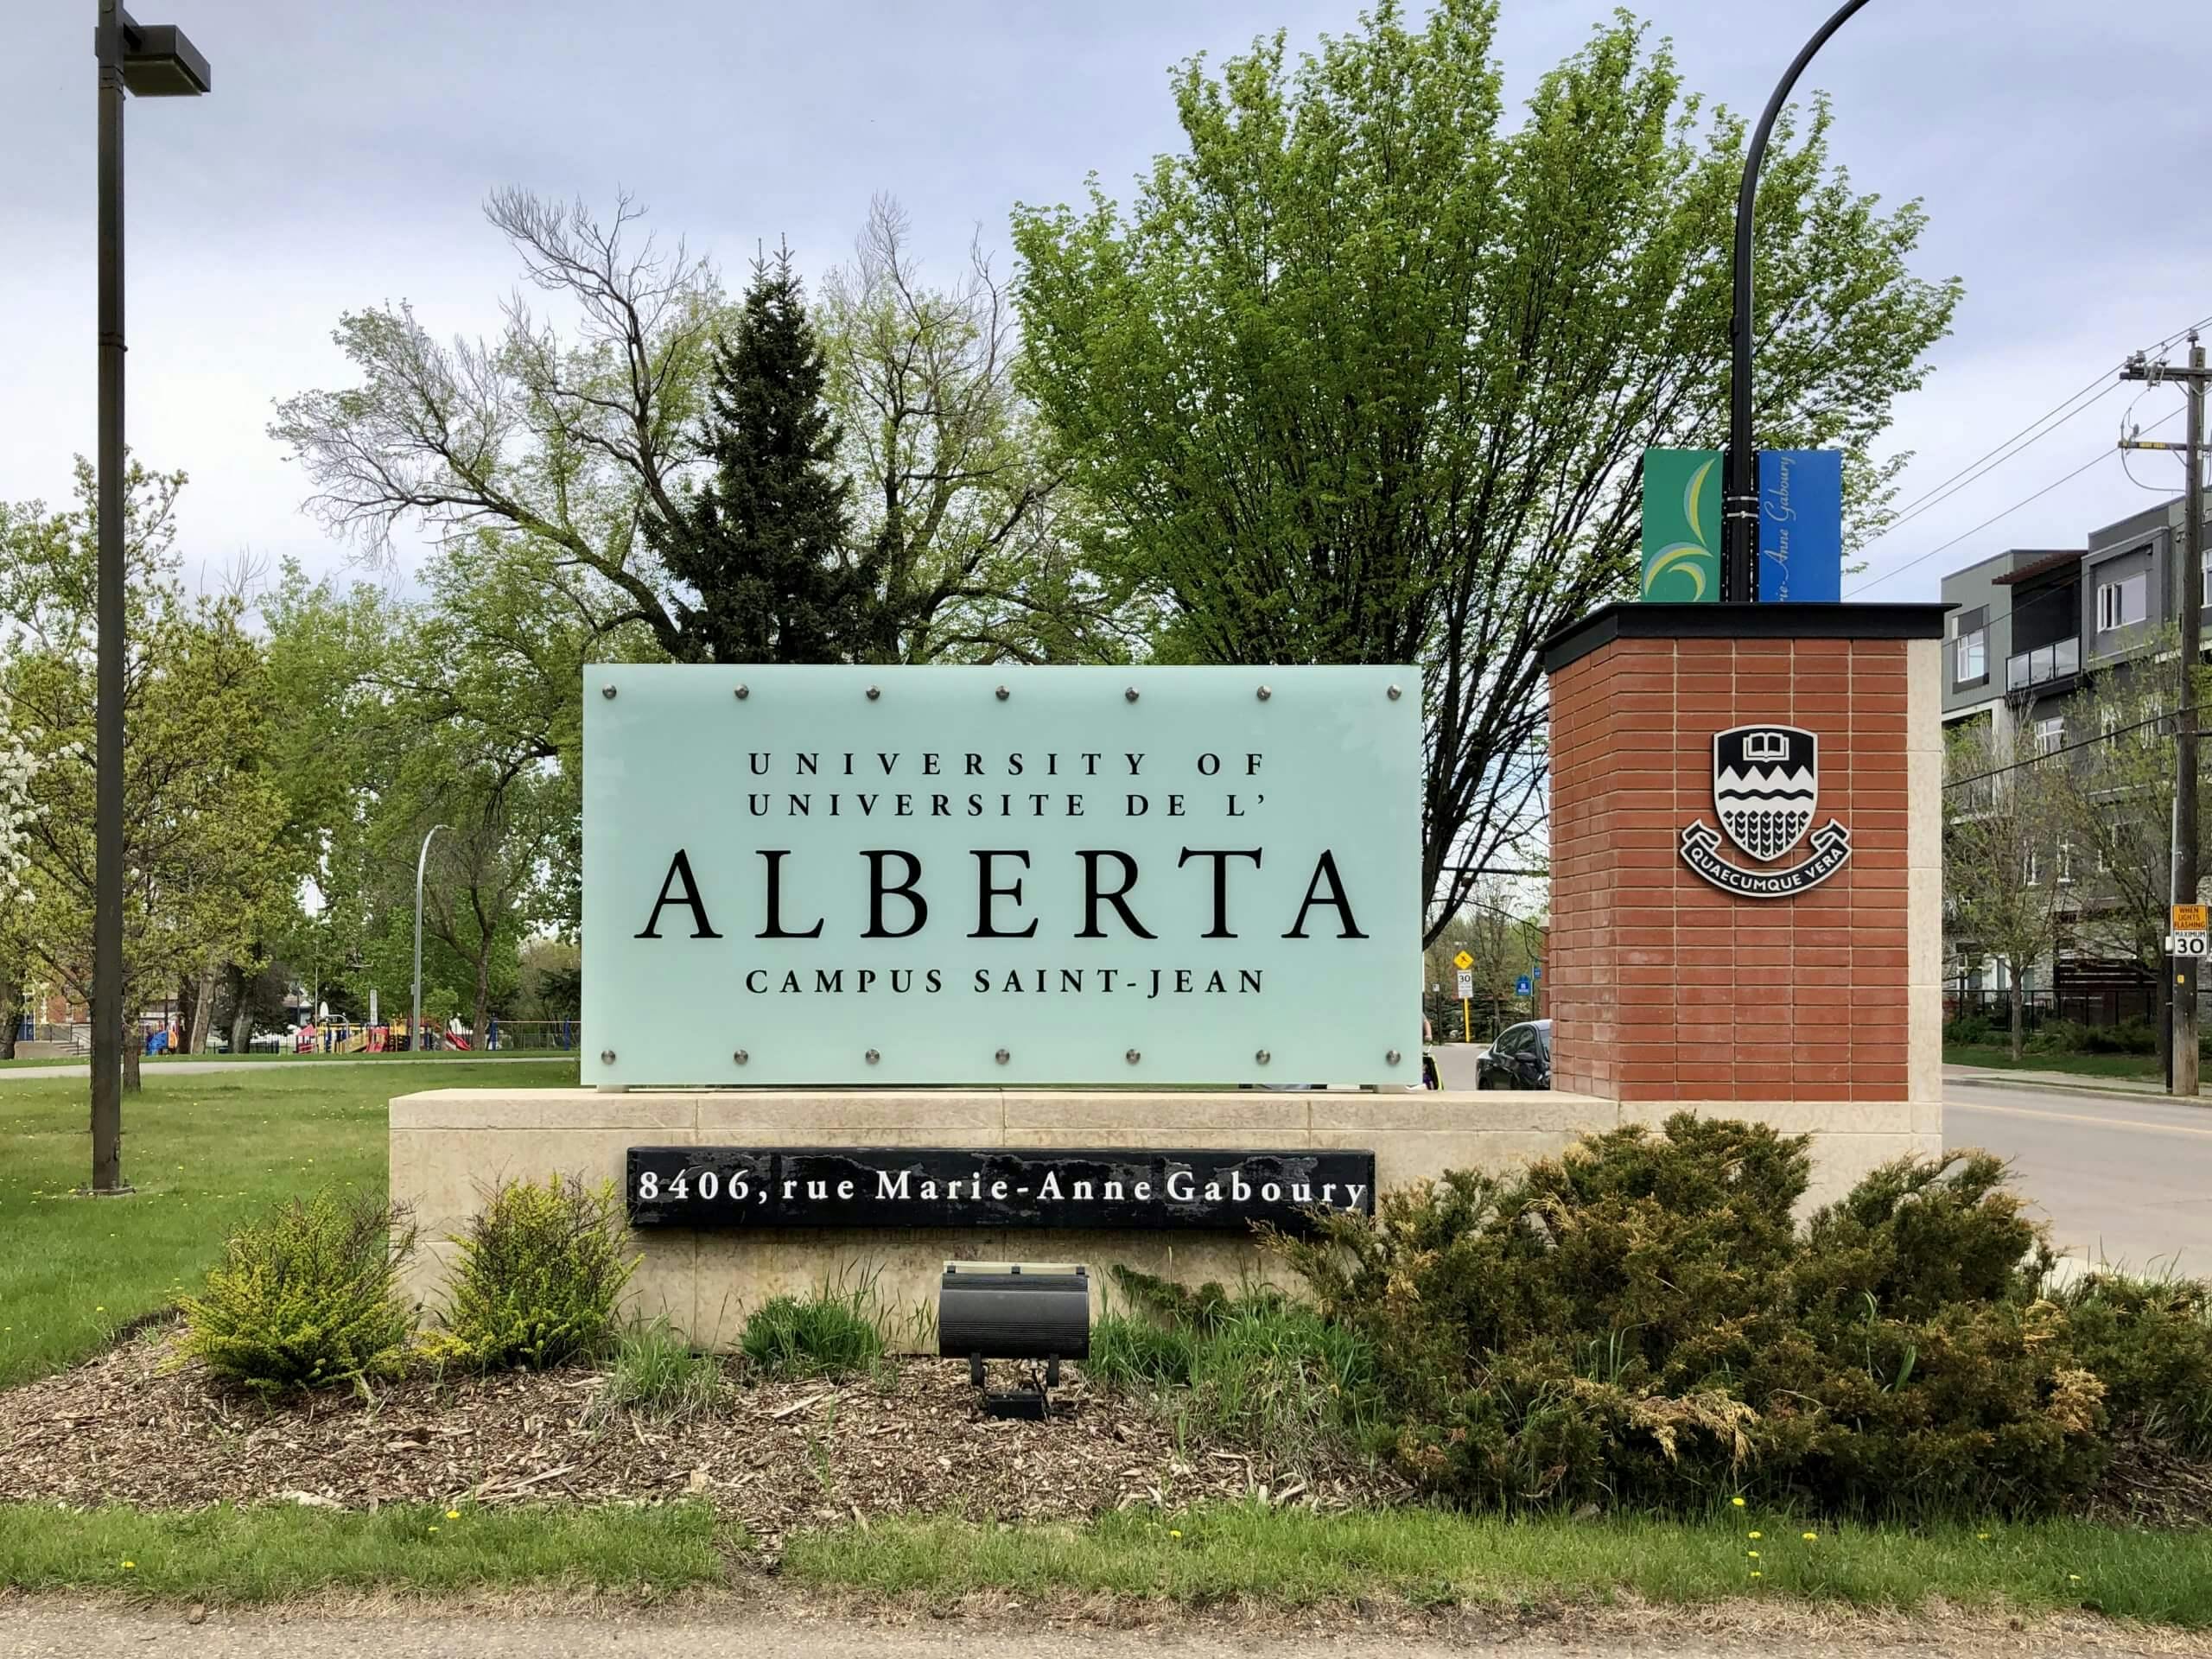 University of Alberta campus sign